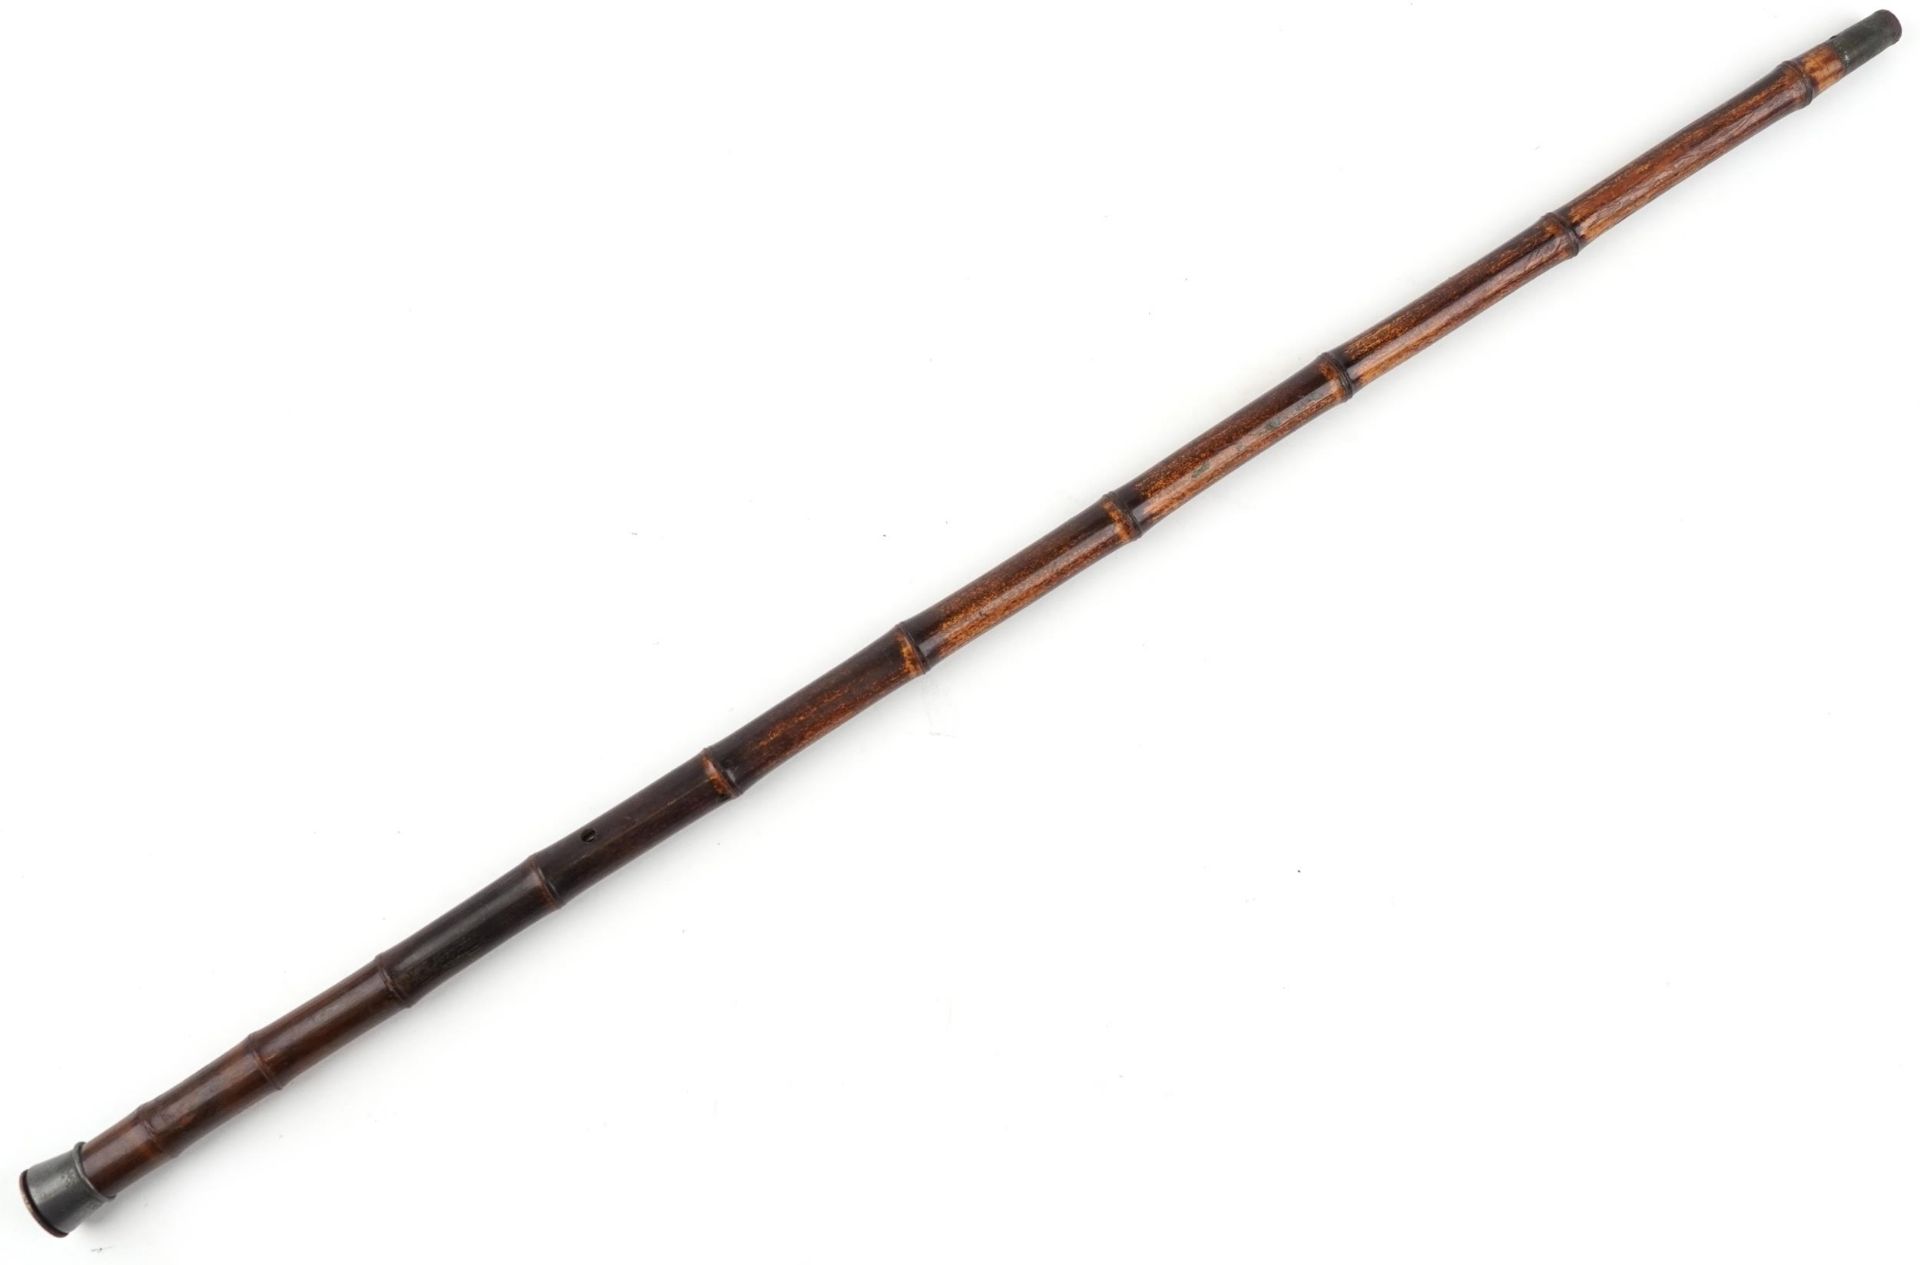 19th century bamboo single shot walking stick gun with pewter mount impressed Patent Brevete SGDG, - Bild 4 aus 6